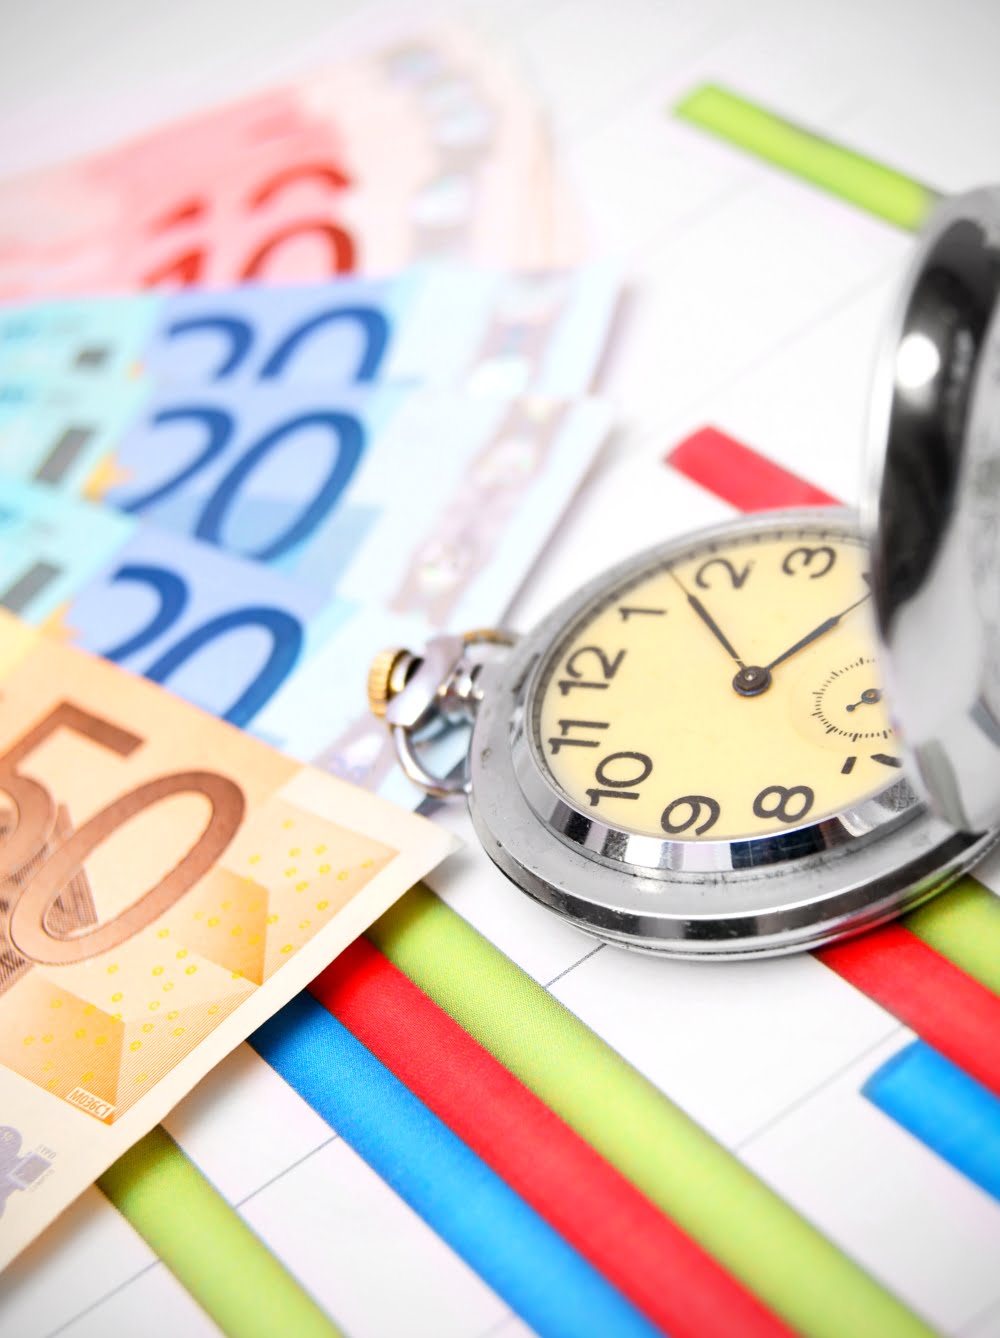 ΕΣΠΑ: Επιδότηση έως 75.000 ευρώ σε πολύ μικρές επιχειρήσεις